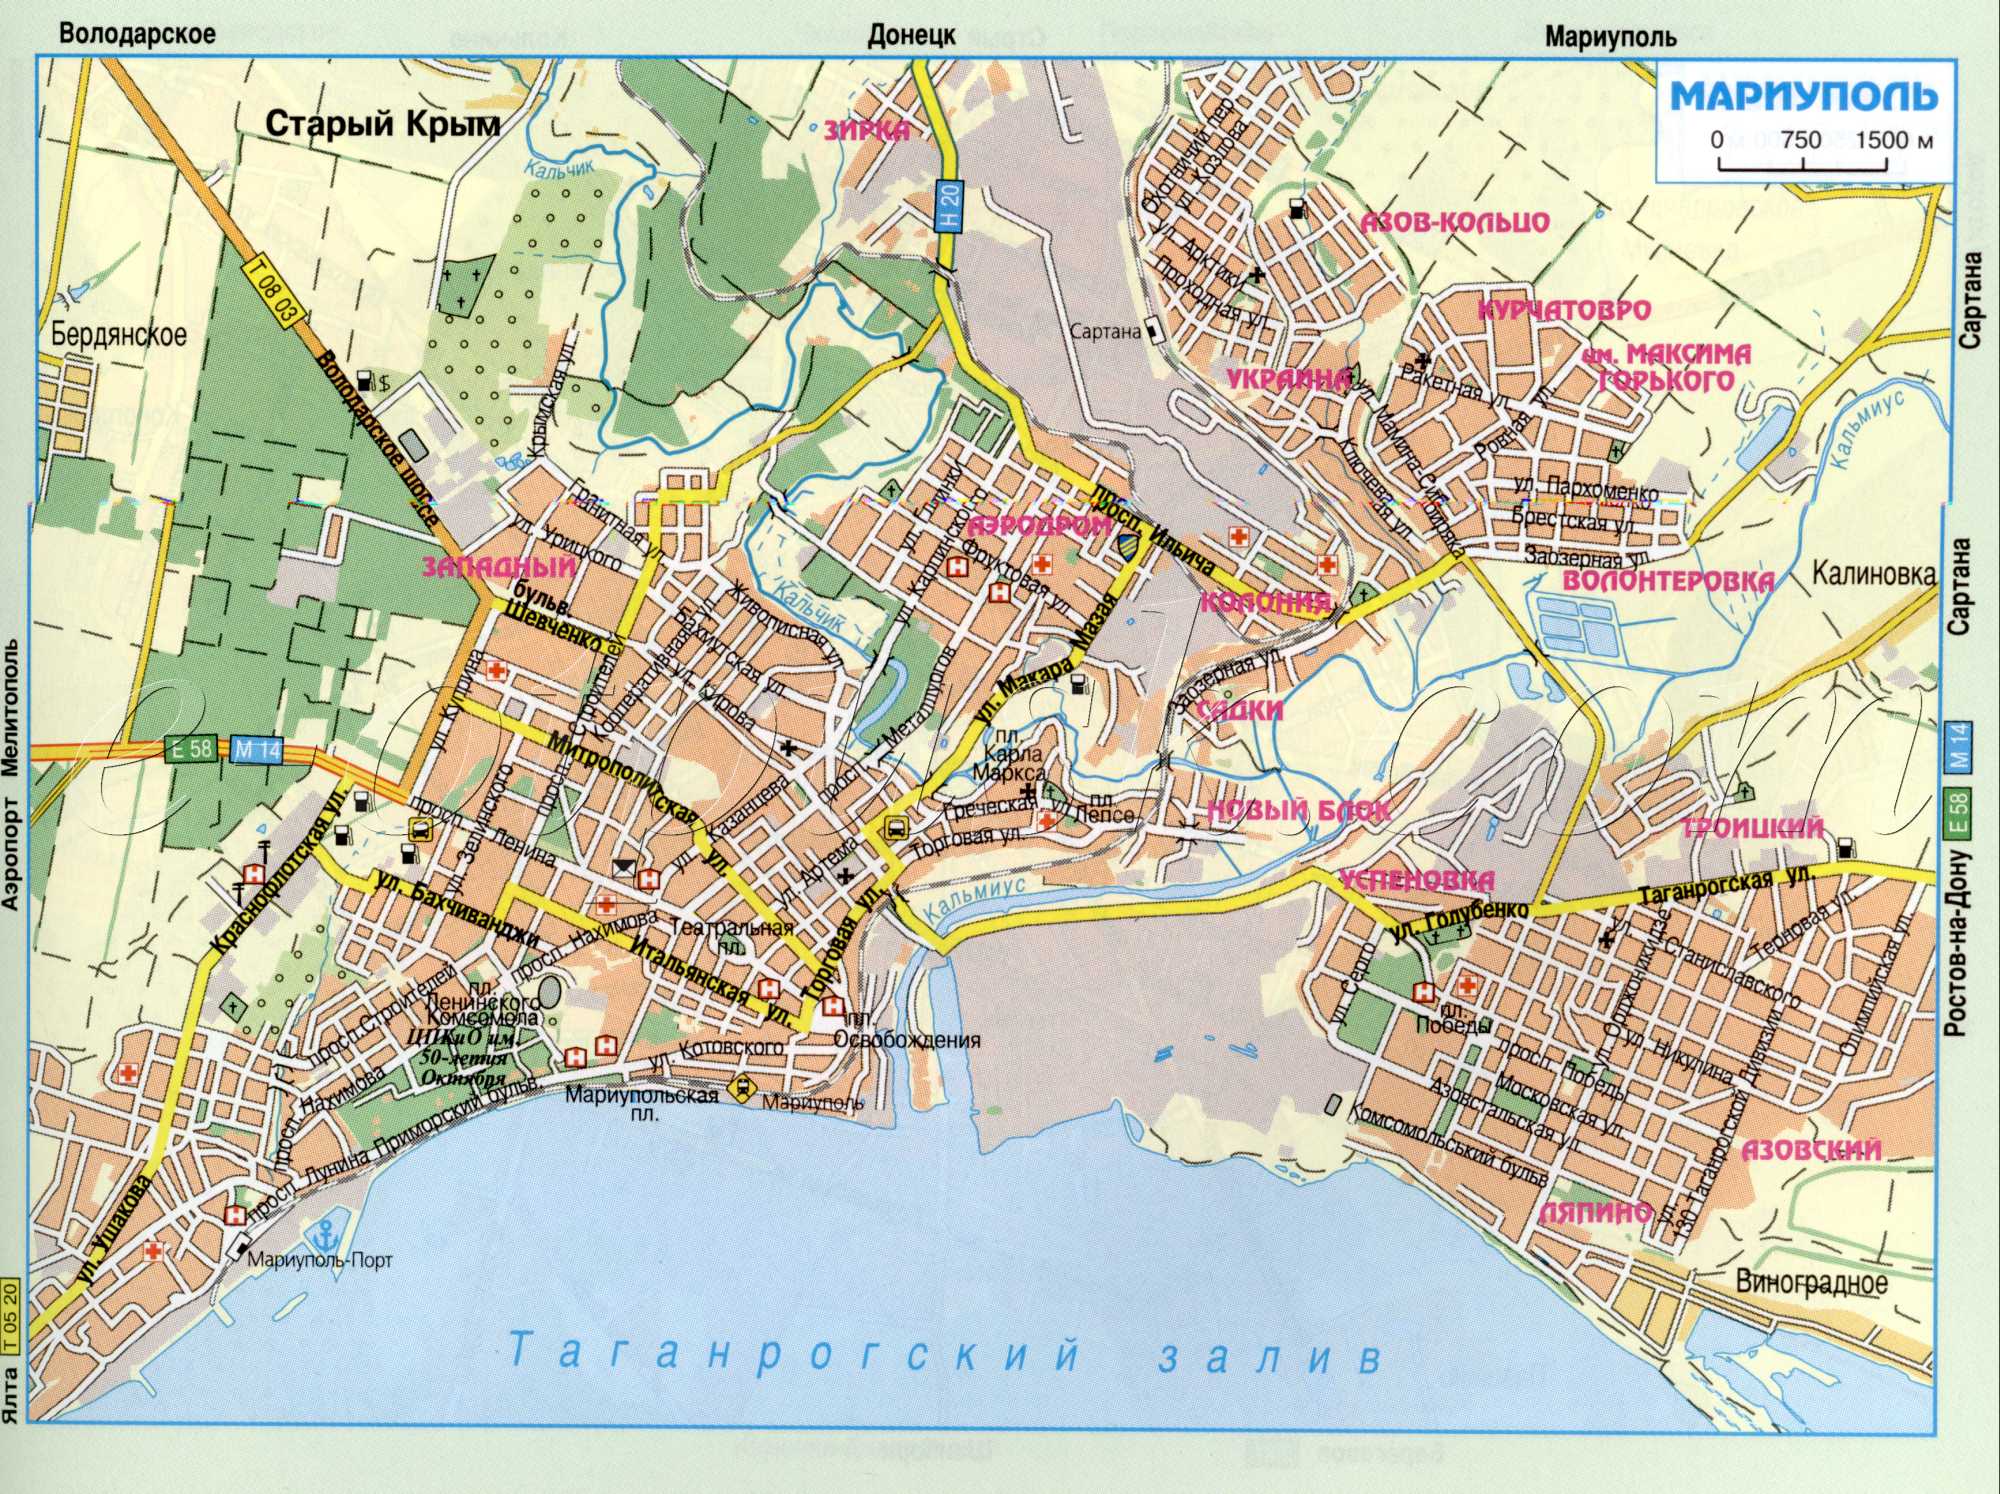 Карта Мариуполя (бывший Жданов) из атласа автомобильных дорог. Схема транзитного проезда через г.Мариуполь Донецкой области. скачать бесплатно